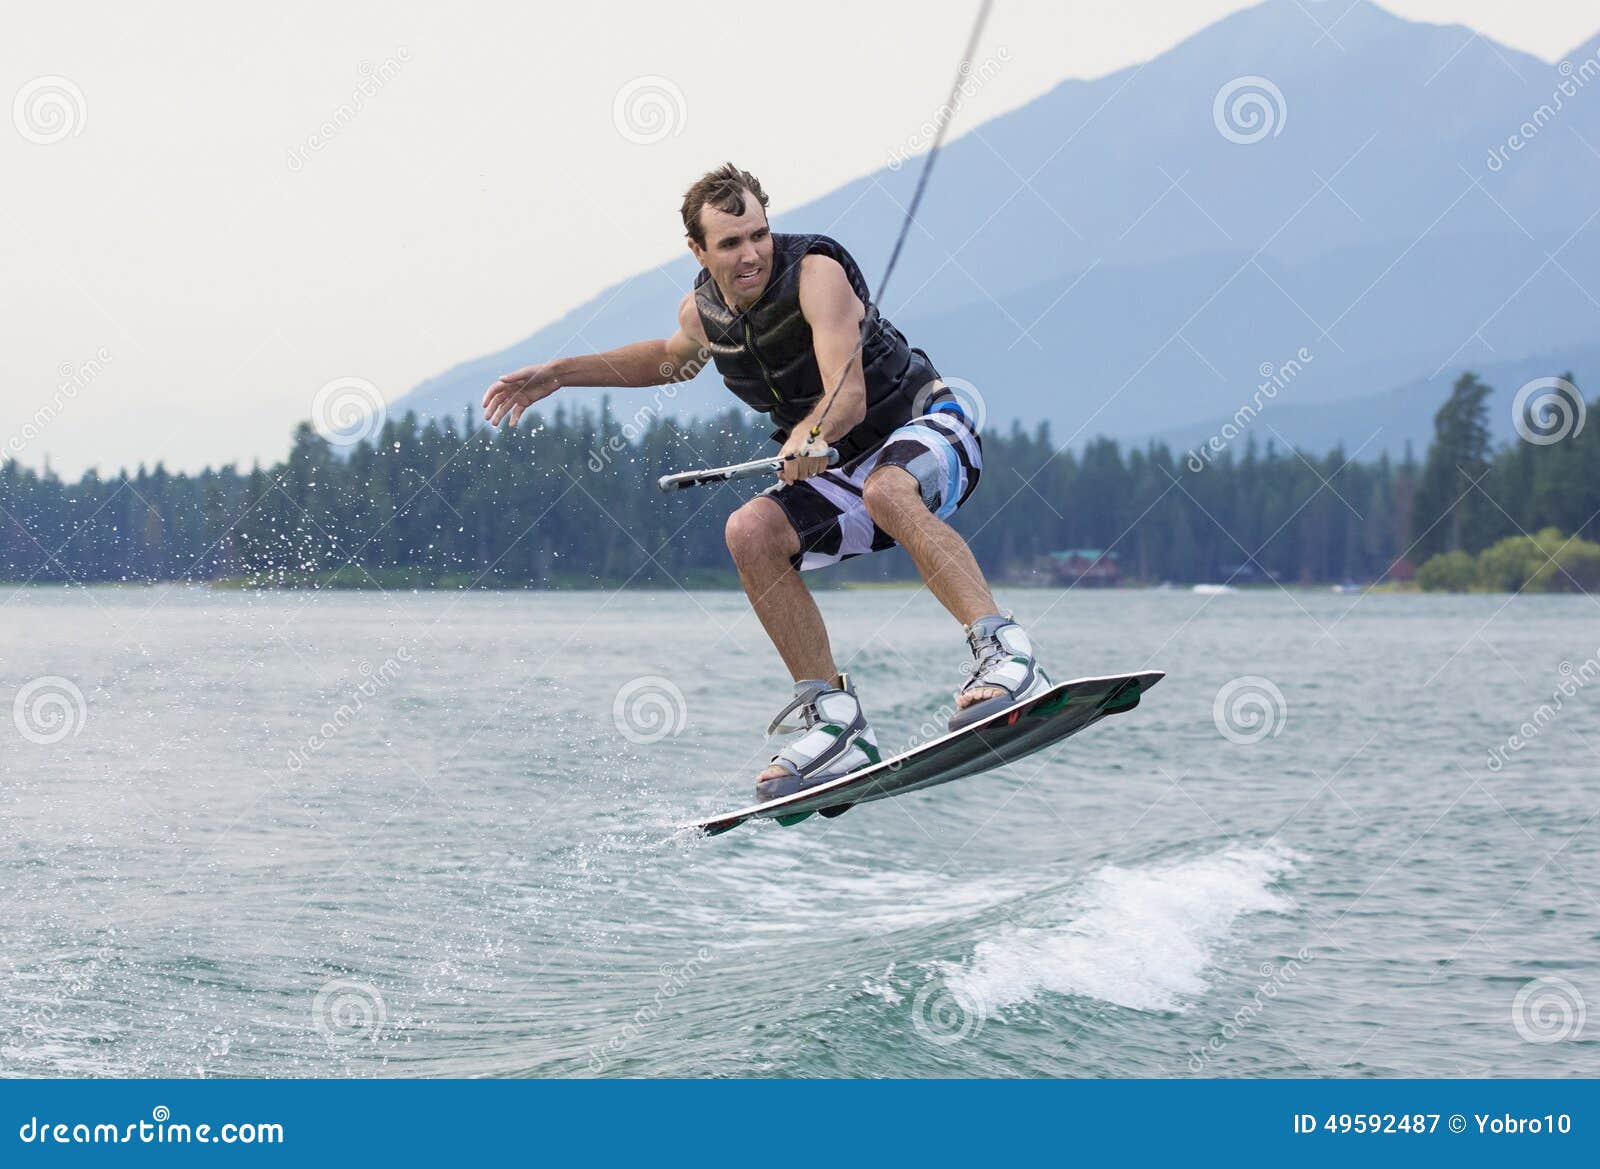 Mens het wakeboarding op een mooi bergmeer. Een actiefoto van een mens die over het kielzog op een wakeboard springen Het krijgen van wat grote lucht en het tonen van zijn vaardigheden